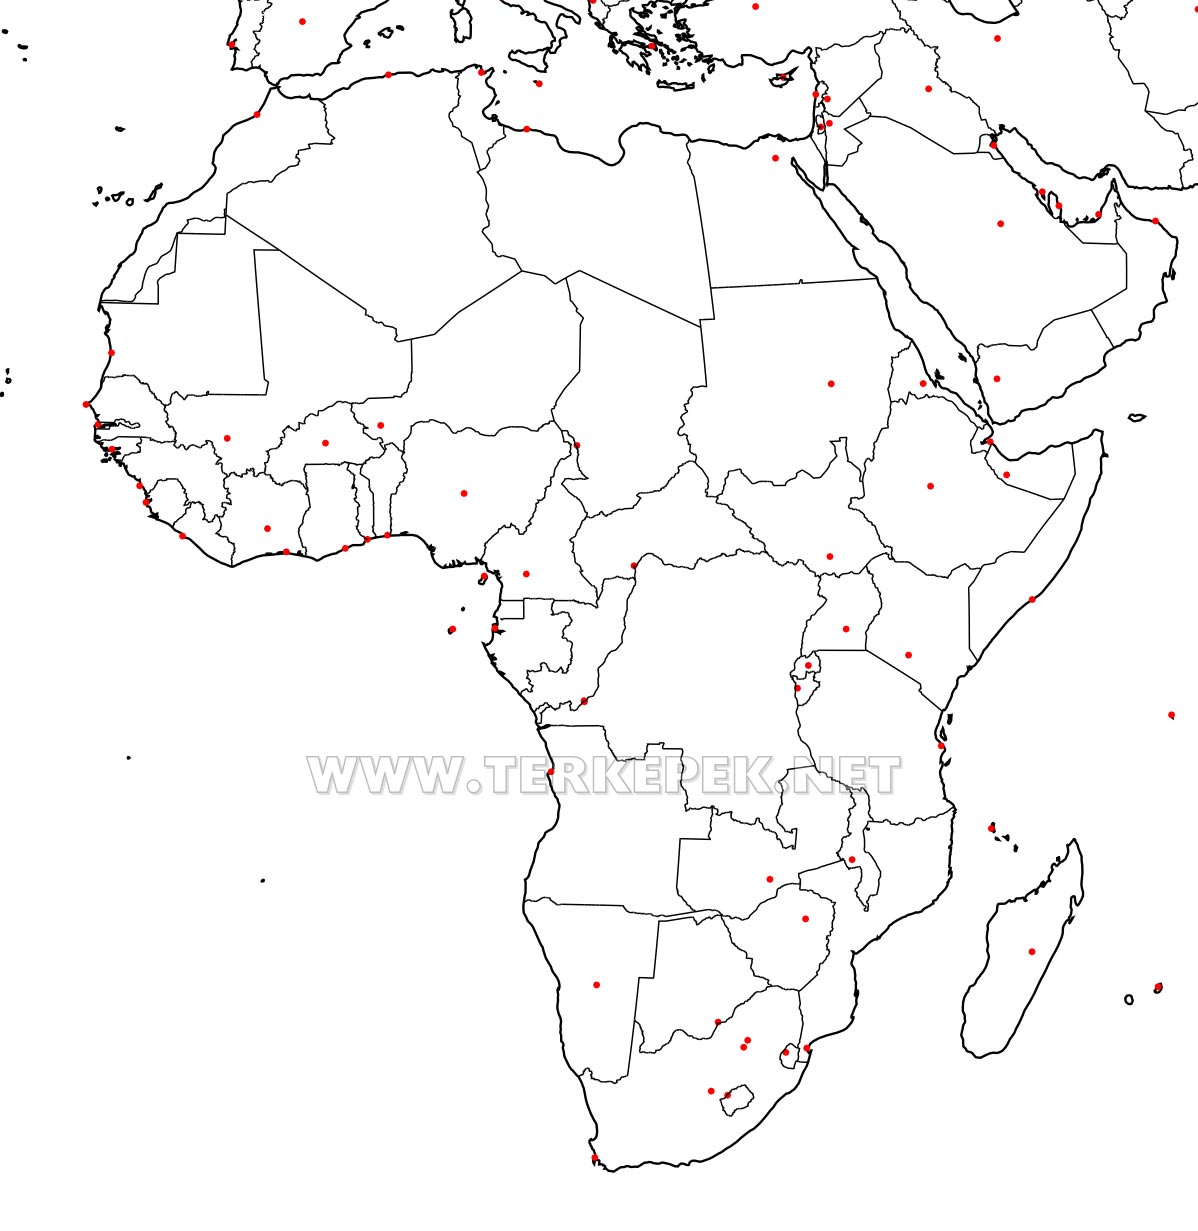 afrika térkép fővárosokkal Afrika Vaktérkép afrika térkép fővárosokkal